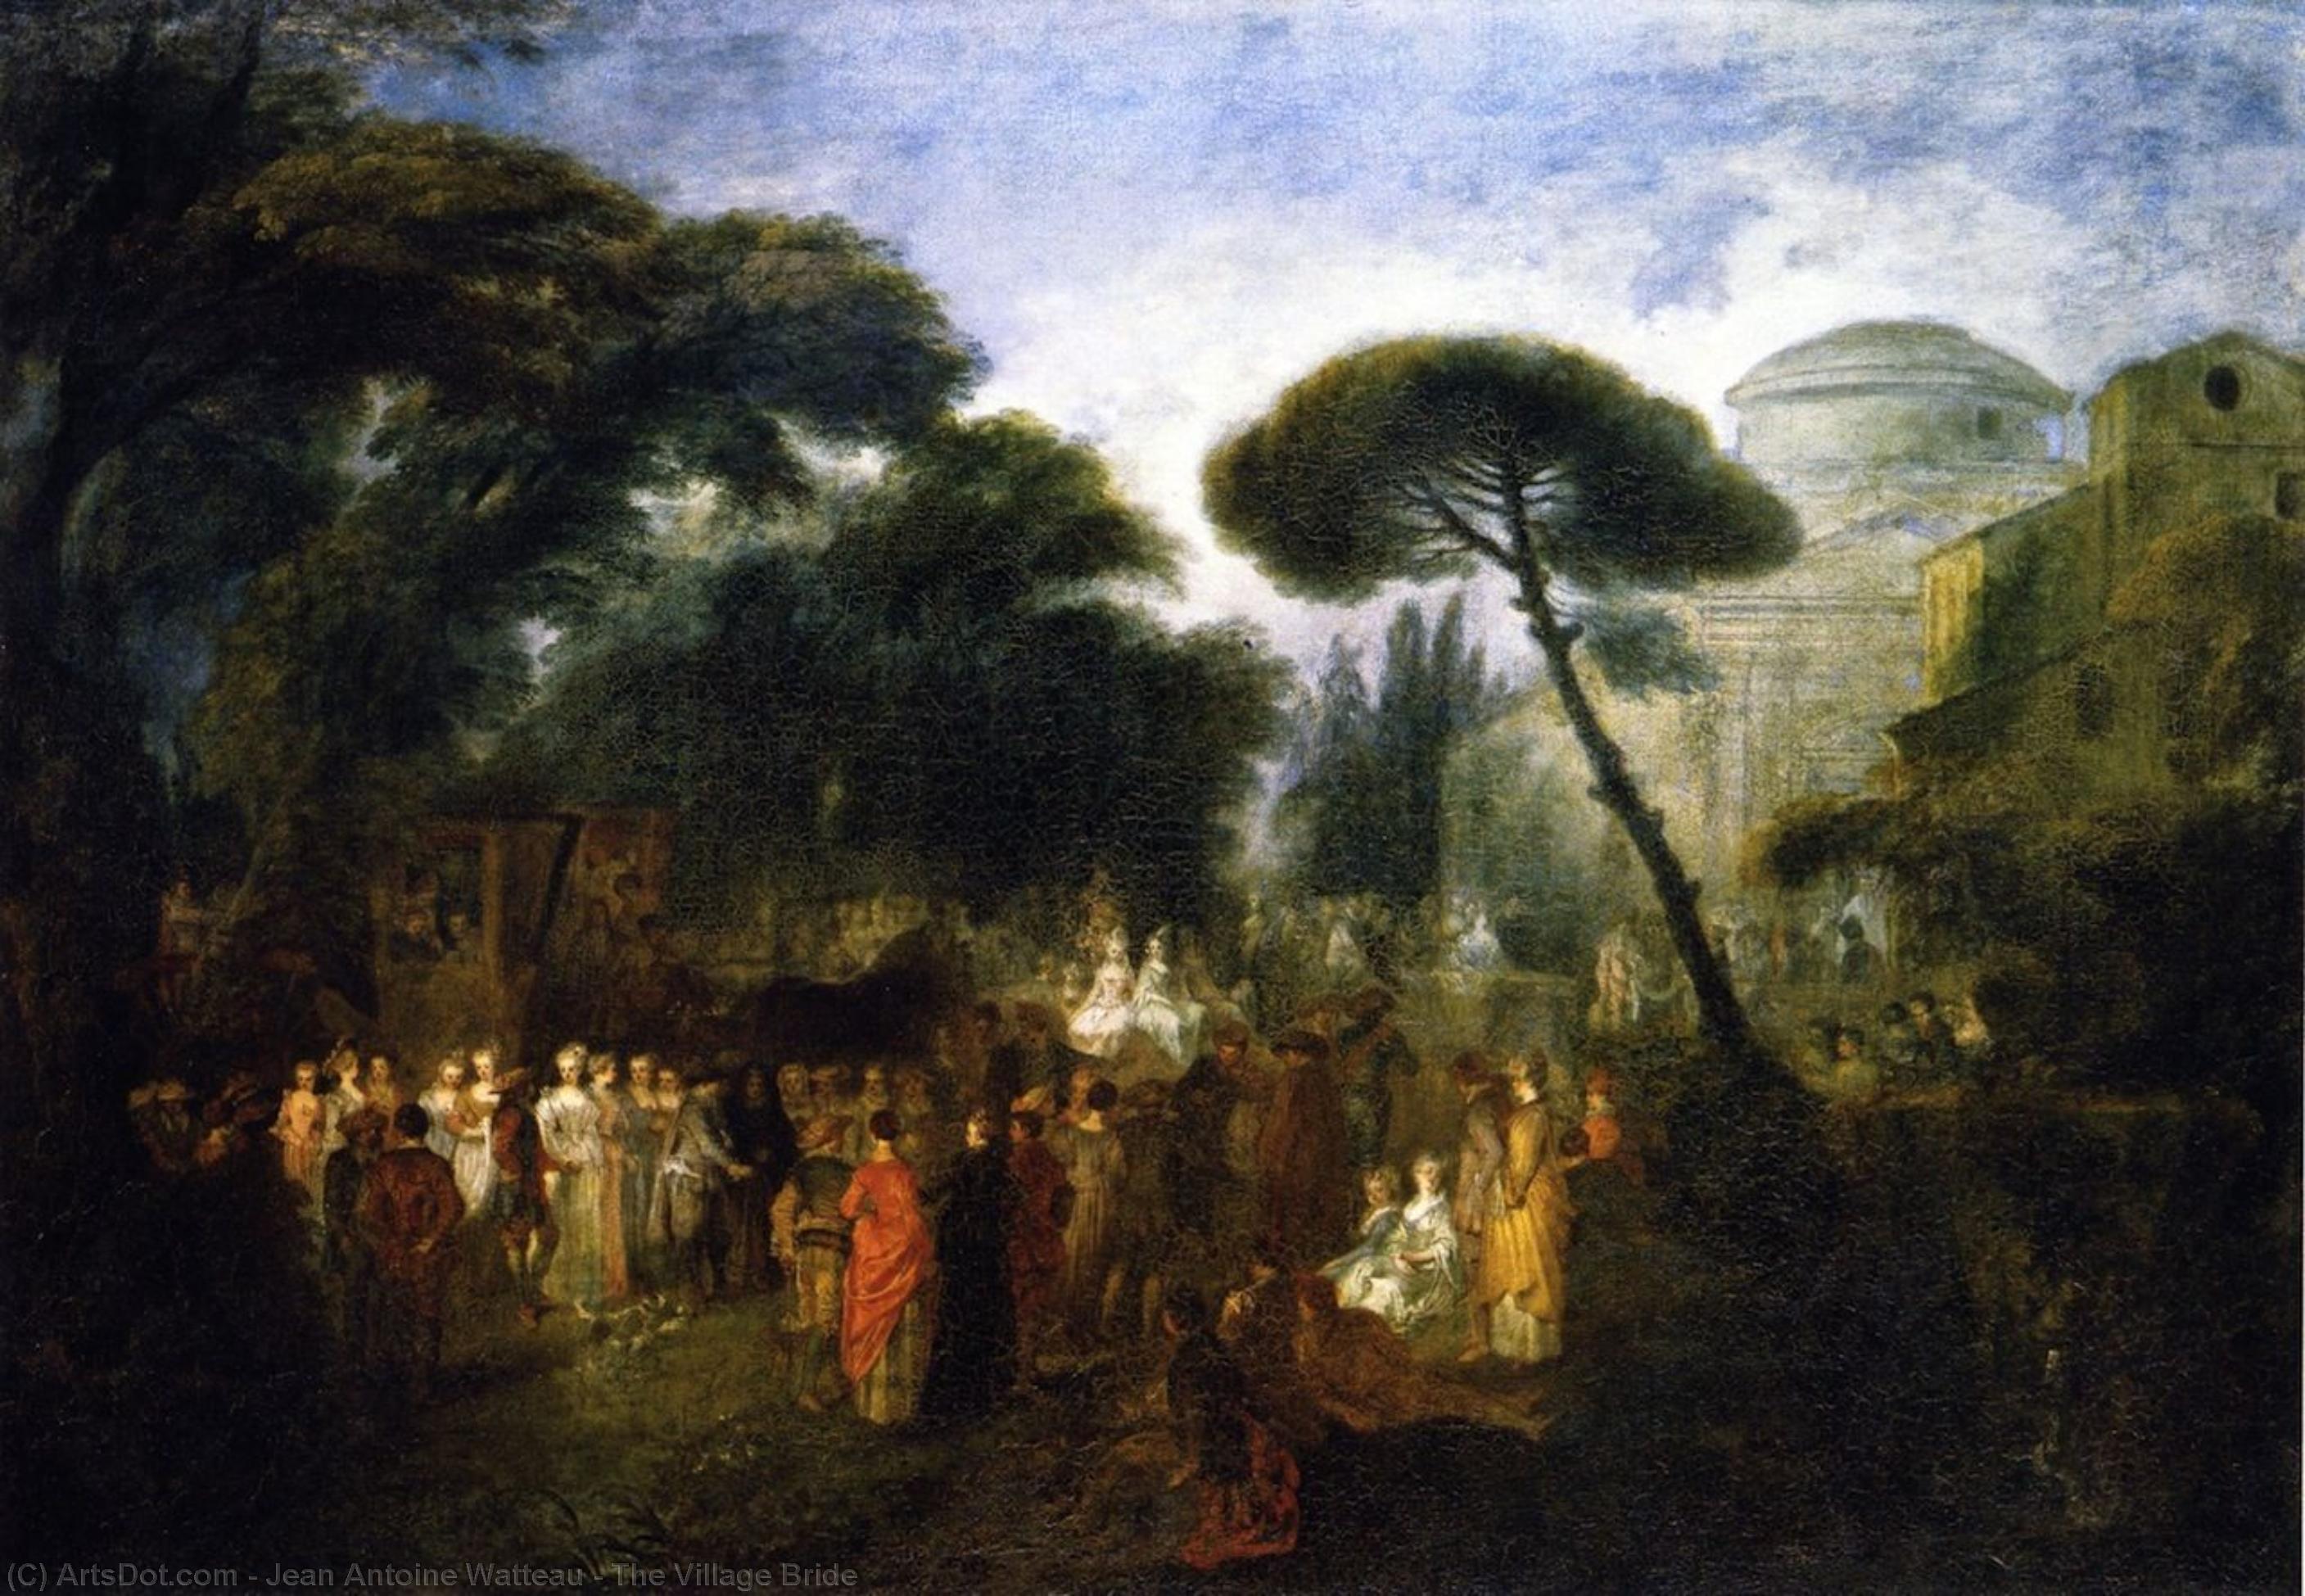 WikiOO.org - Enciklopedija dailės - Tapyba, meno kuriniai Jean Antoine Watteau - The Village Bride